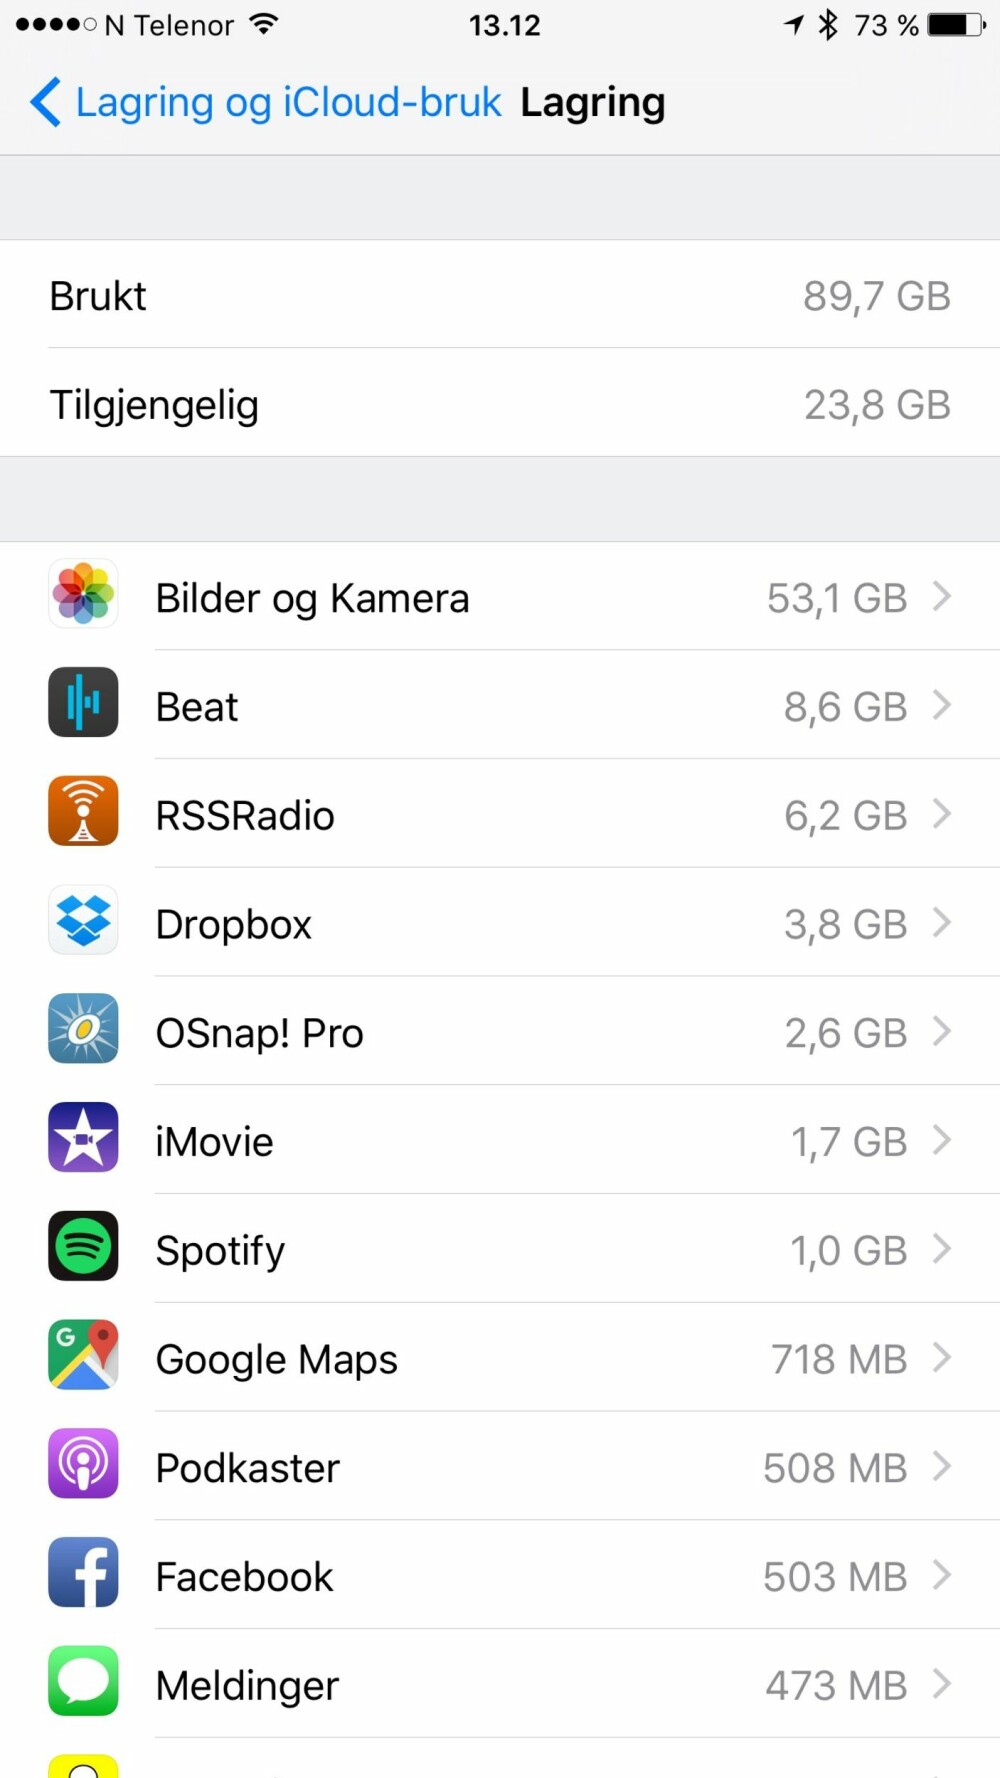 Hva bruker plass på din iPhone? Sjekk hvilke apper som spiser opp lagringsplassen på mobilen din. Slett de du likevel ikke bruker.